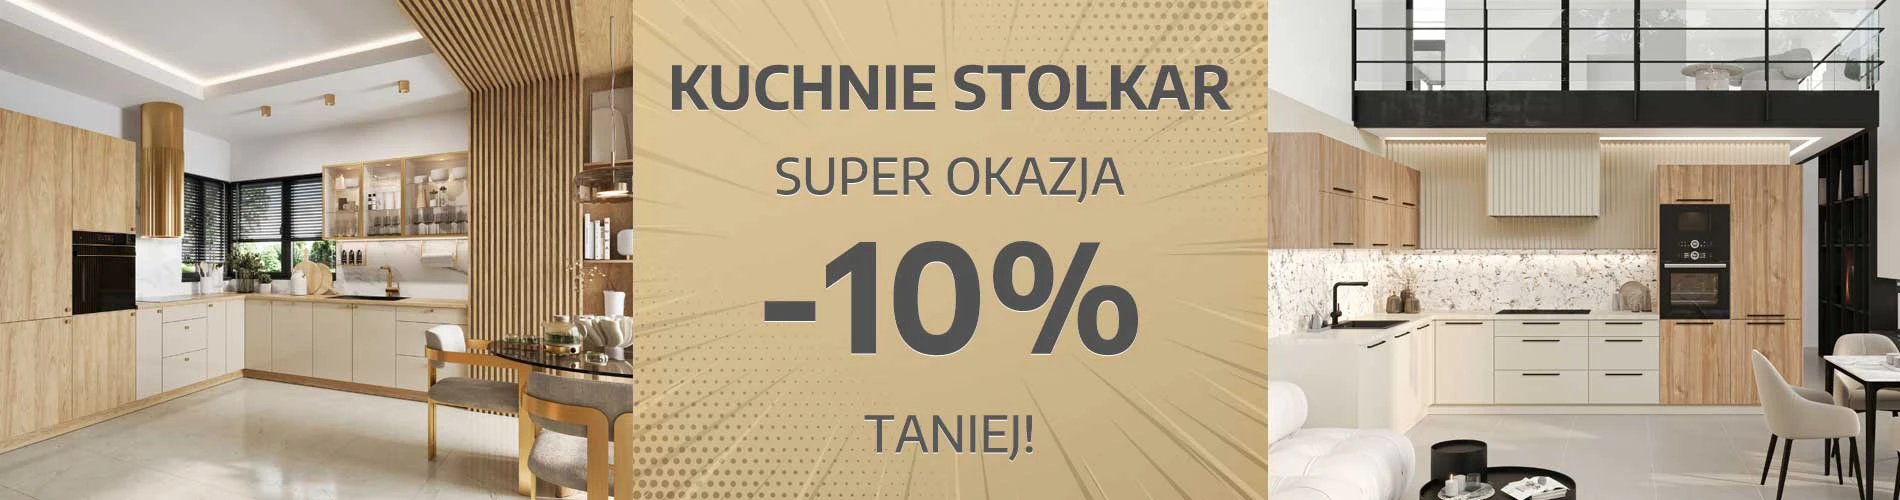 Kuchnie Stolkar -10% taniej